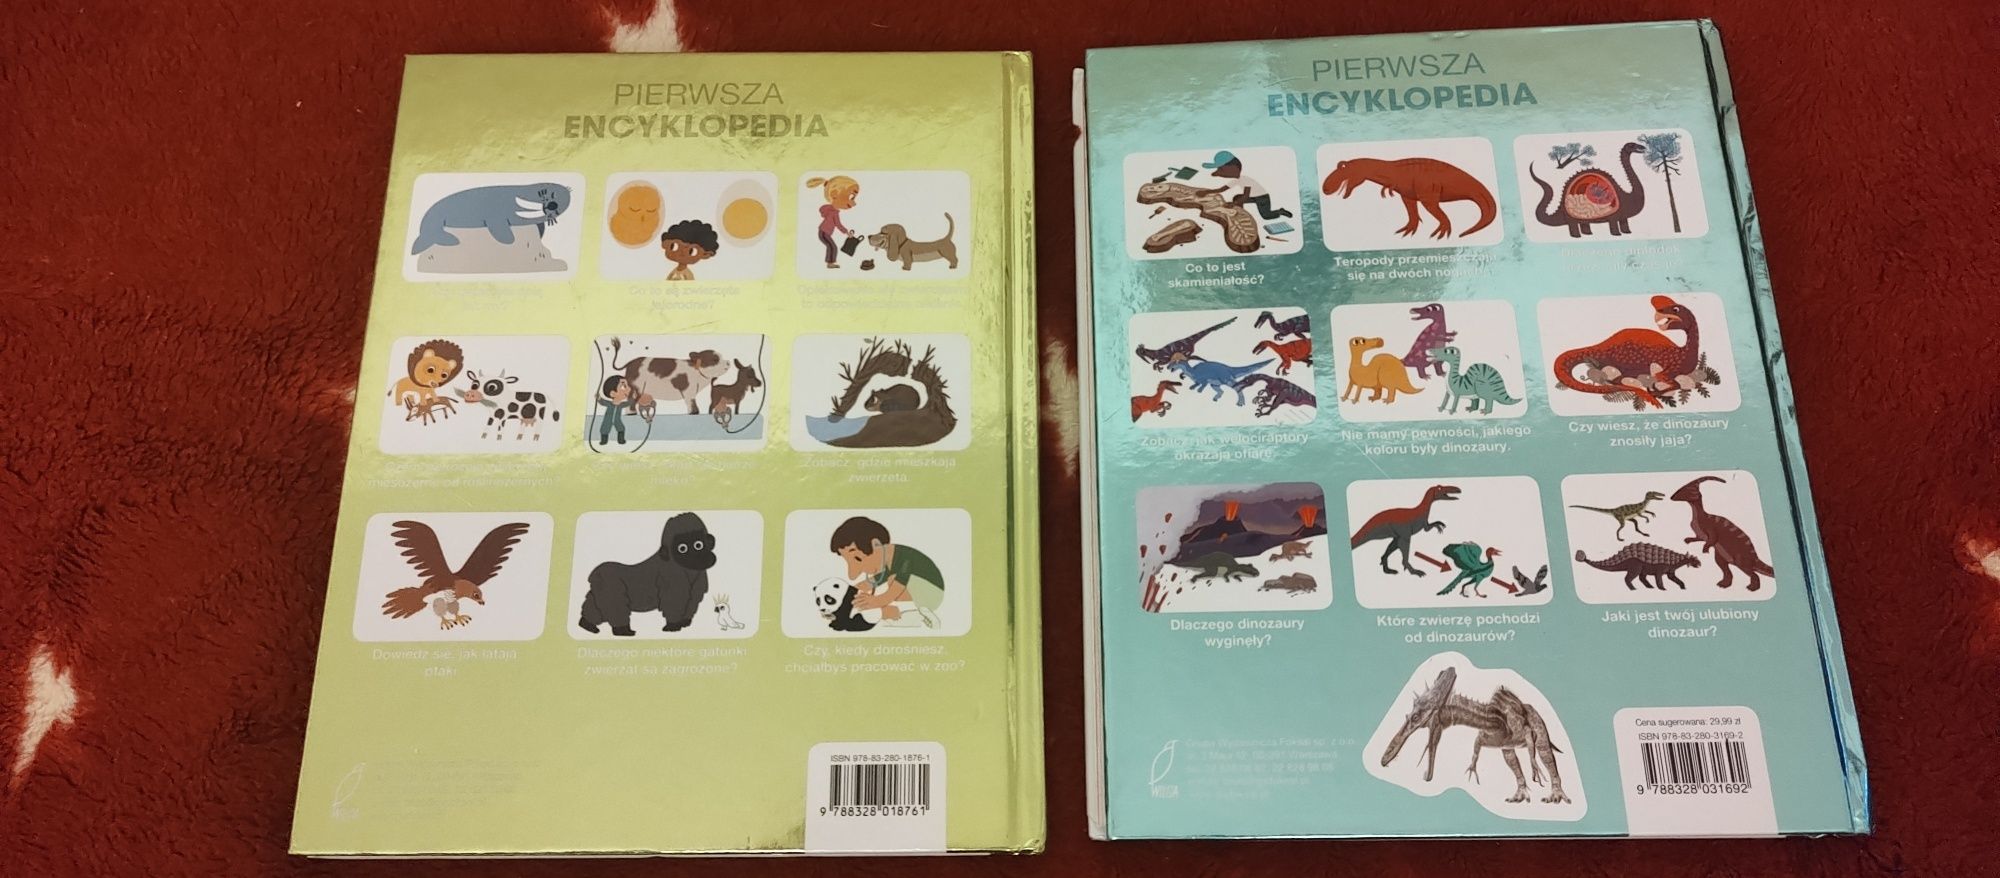 Pierwsza Encyklopedia : zwierzęta i dinozaury, wilga